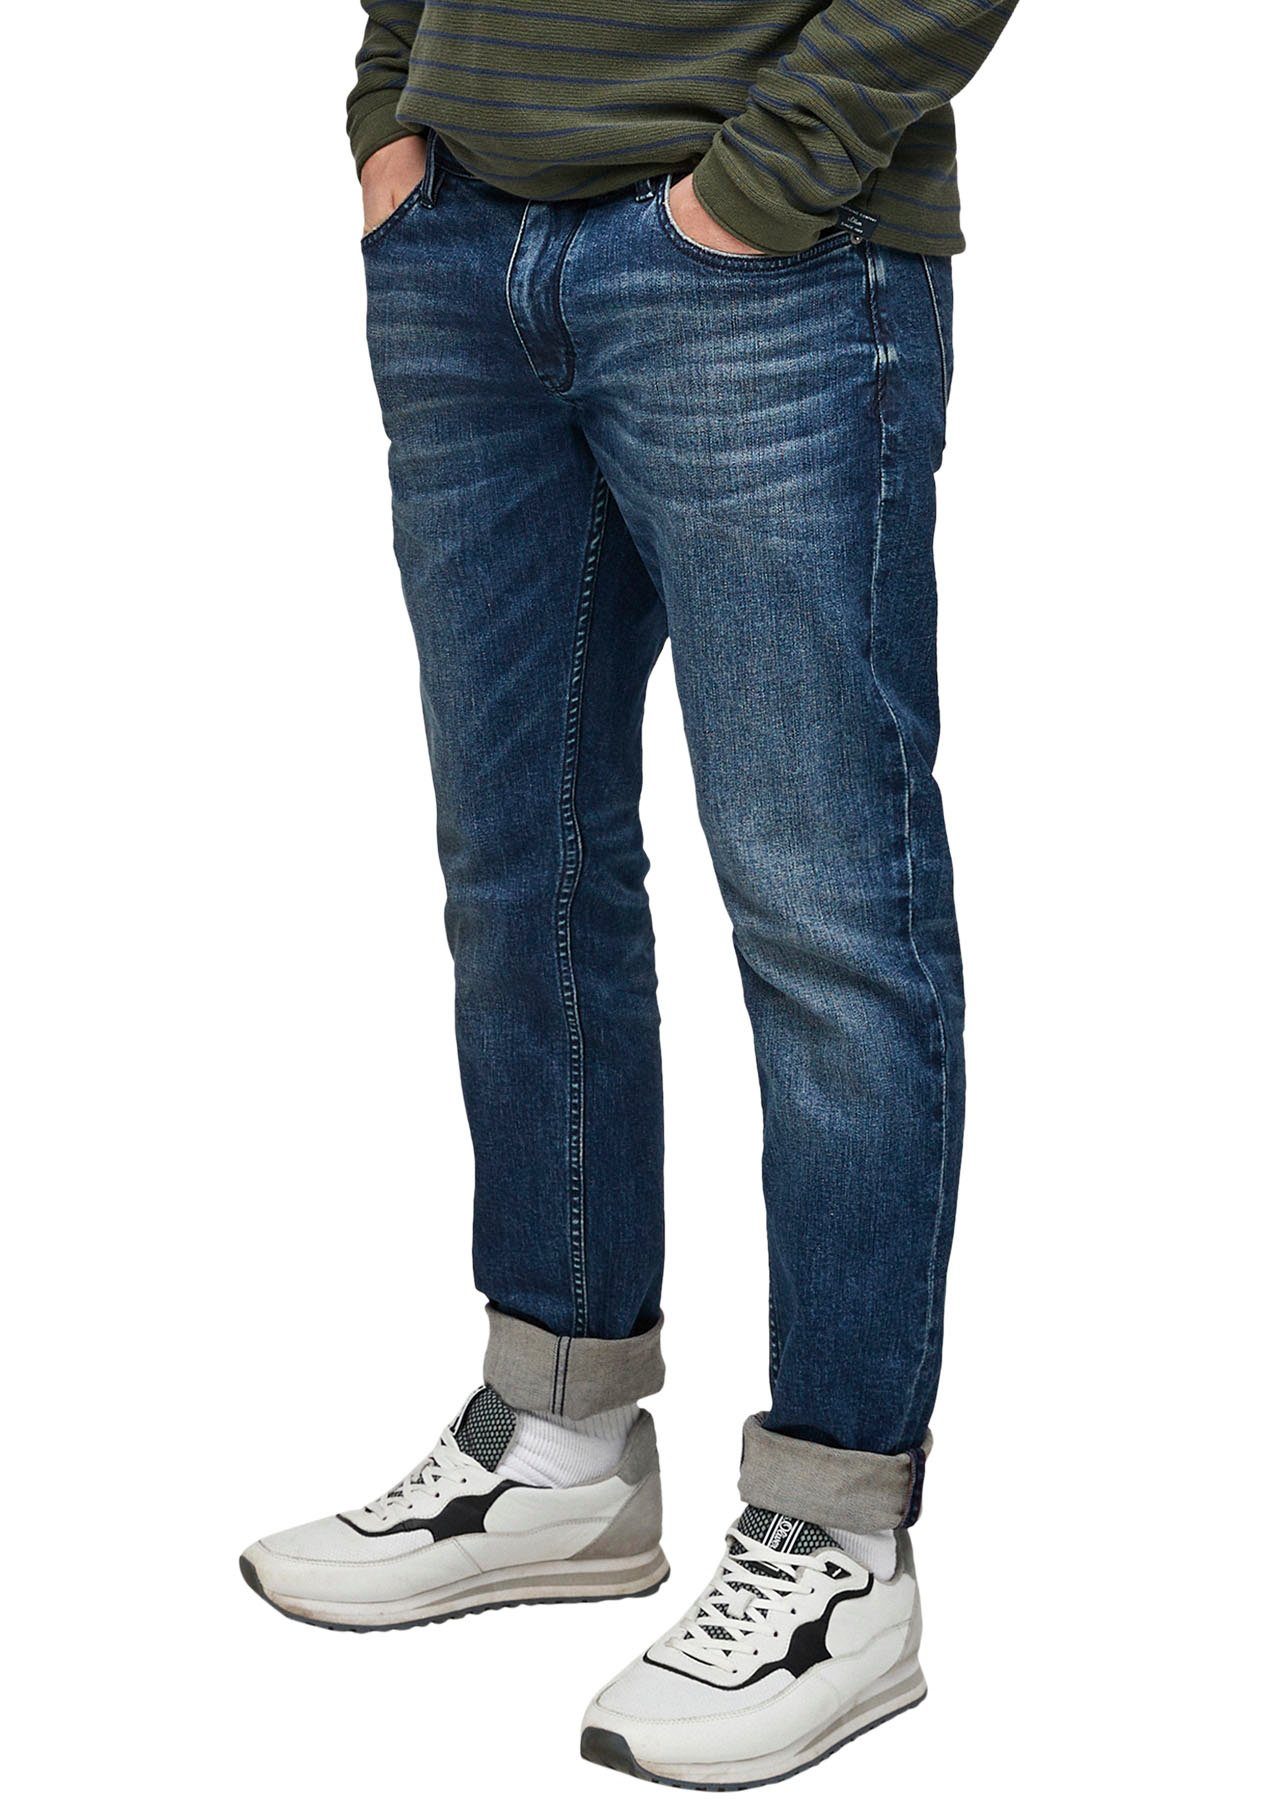 الأداة الحرارة صرير s oliver herren jeans tube slim - kartaltesisatciniz.com